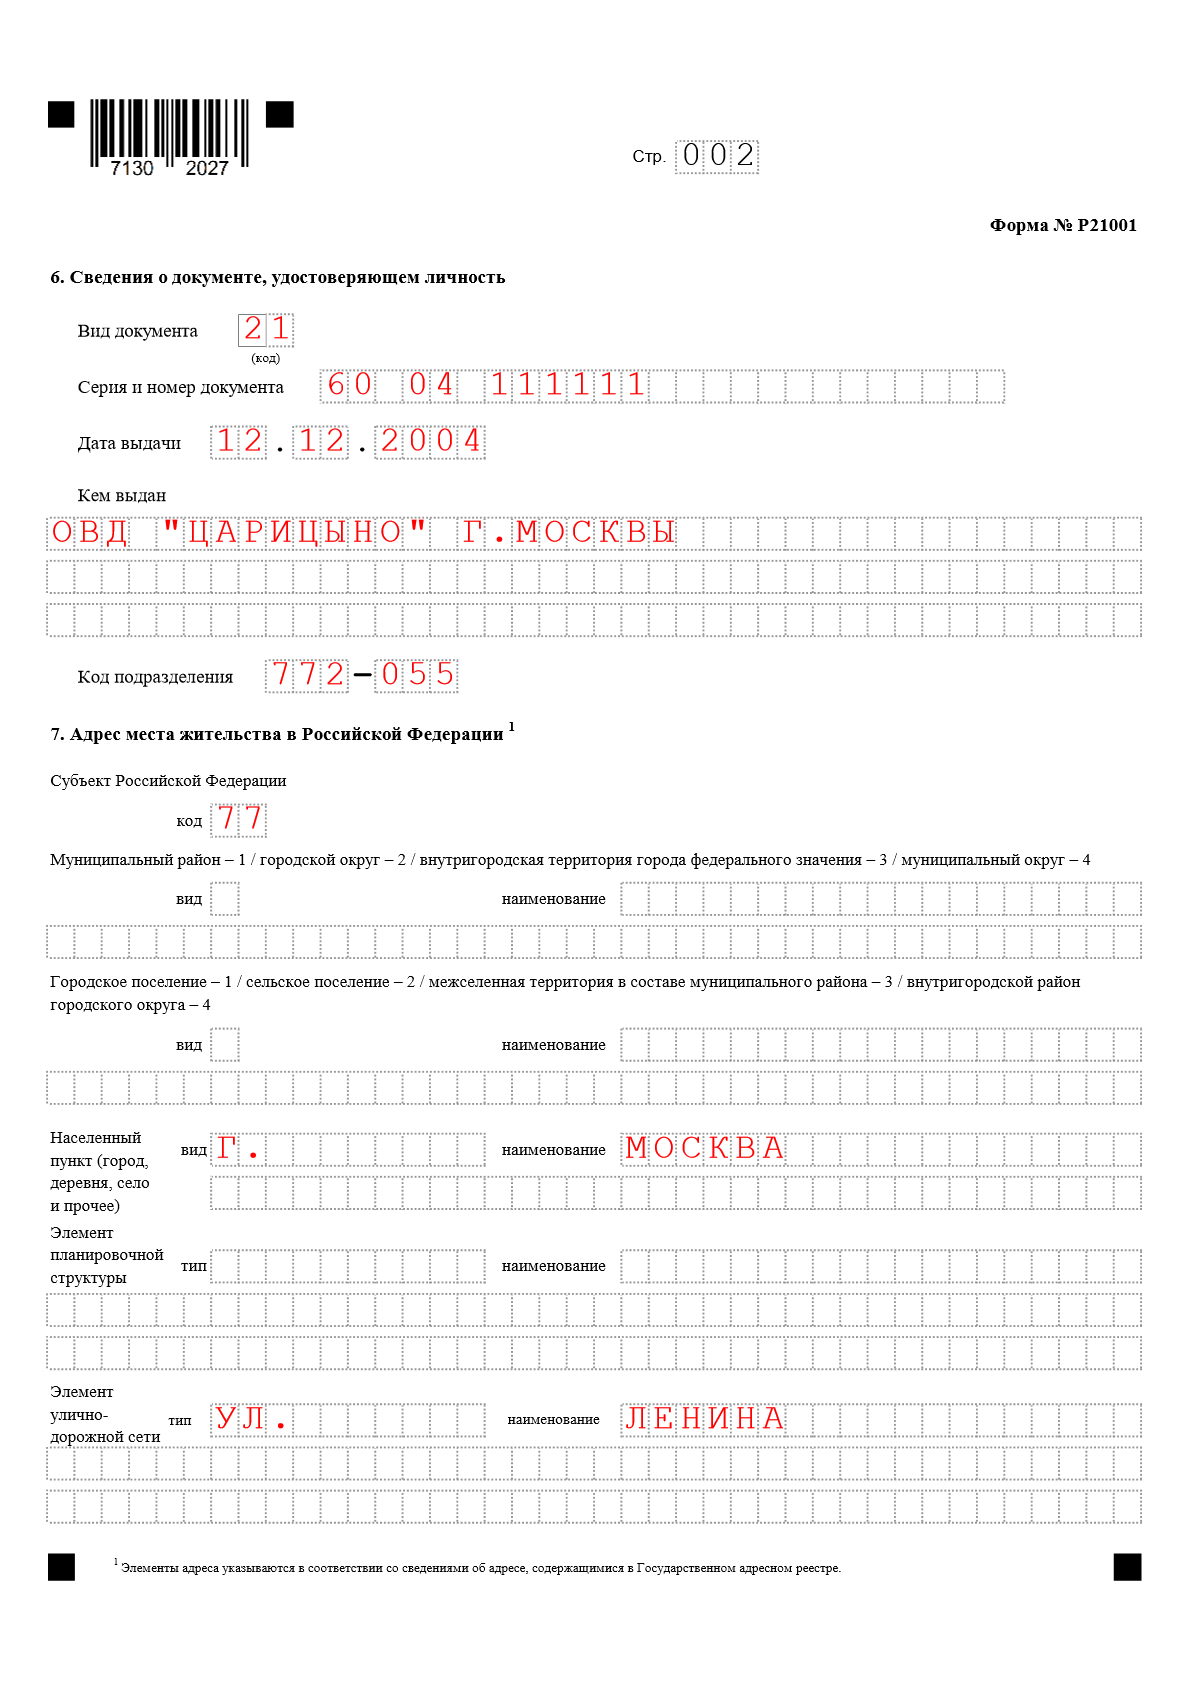 Заявление на регистрацию ИП Лист 002 Паспортные данные И адрес места жительства (пребывания) в Российской Федерации.